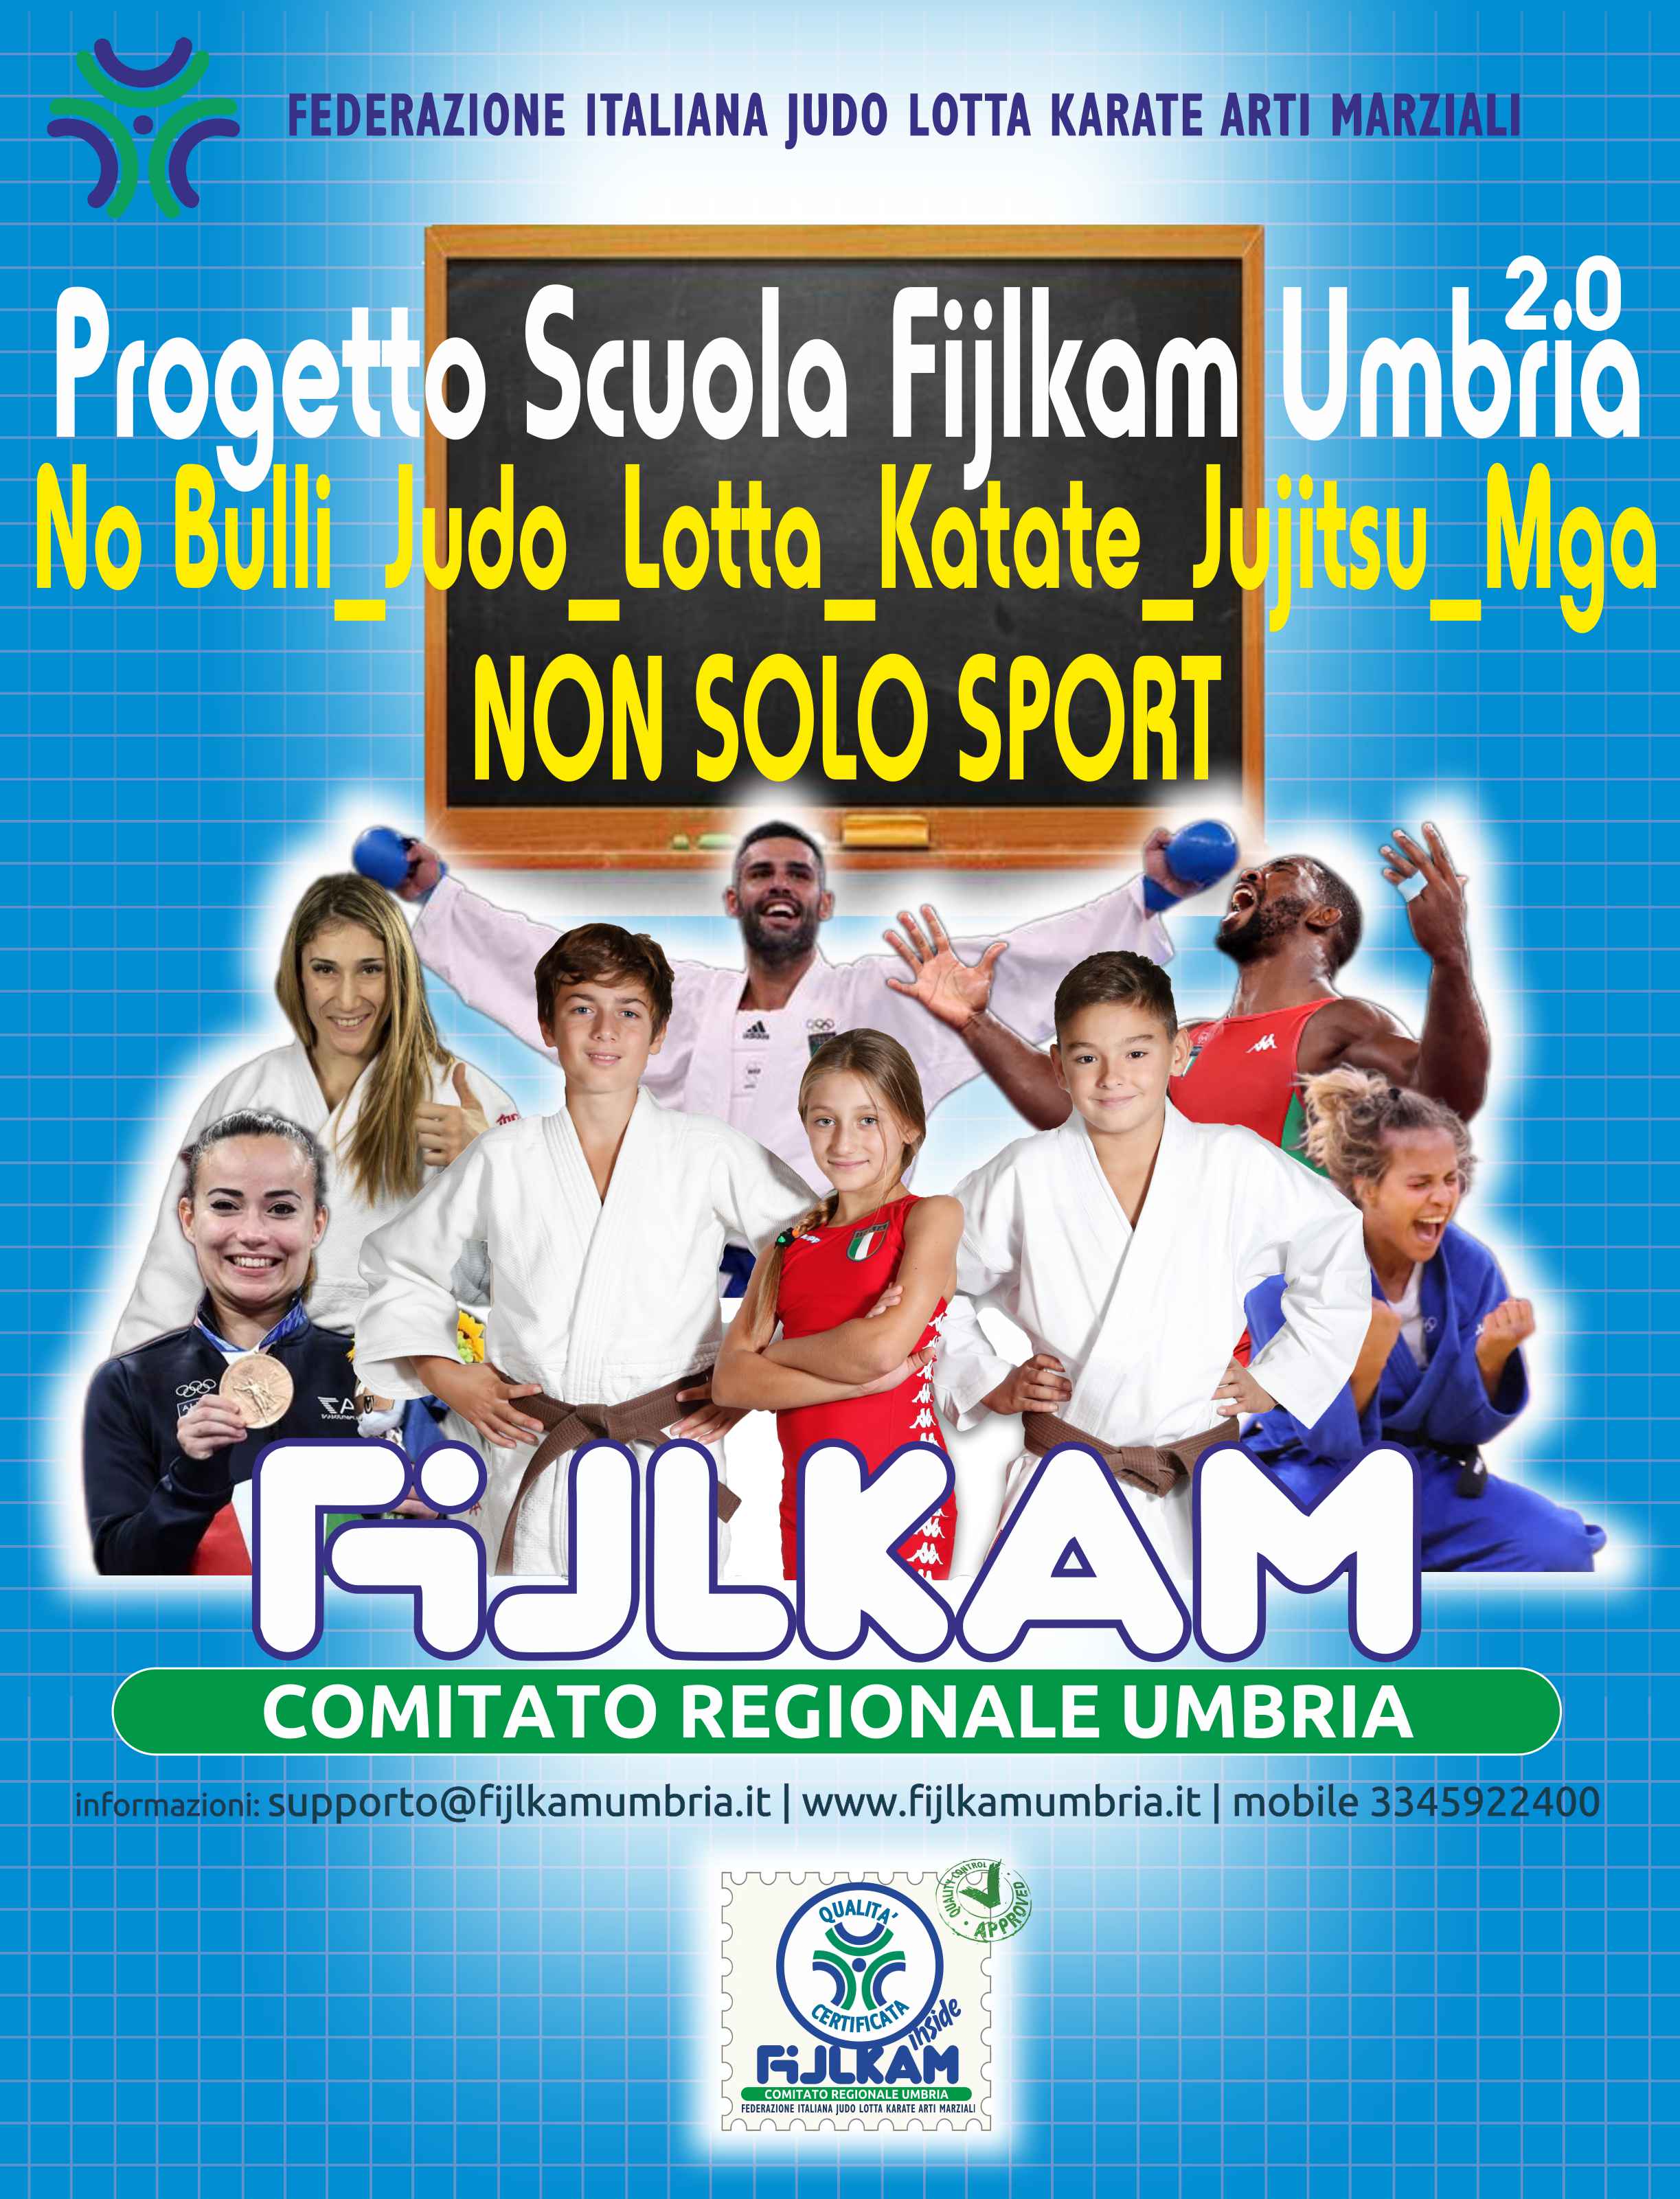 06 ProgettoScuolaFijlkamUmbria2021 logo v01